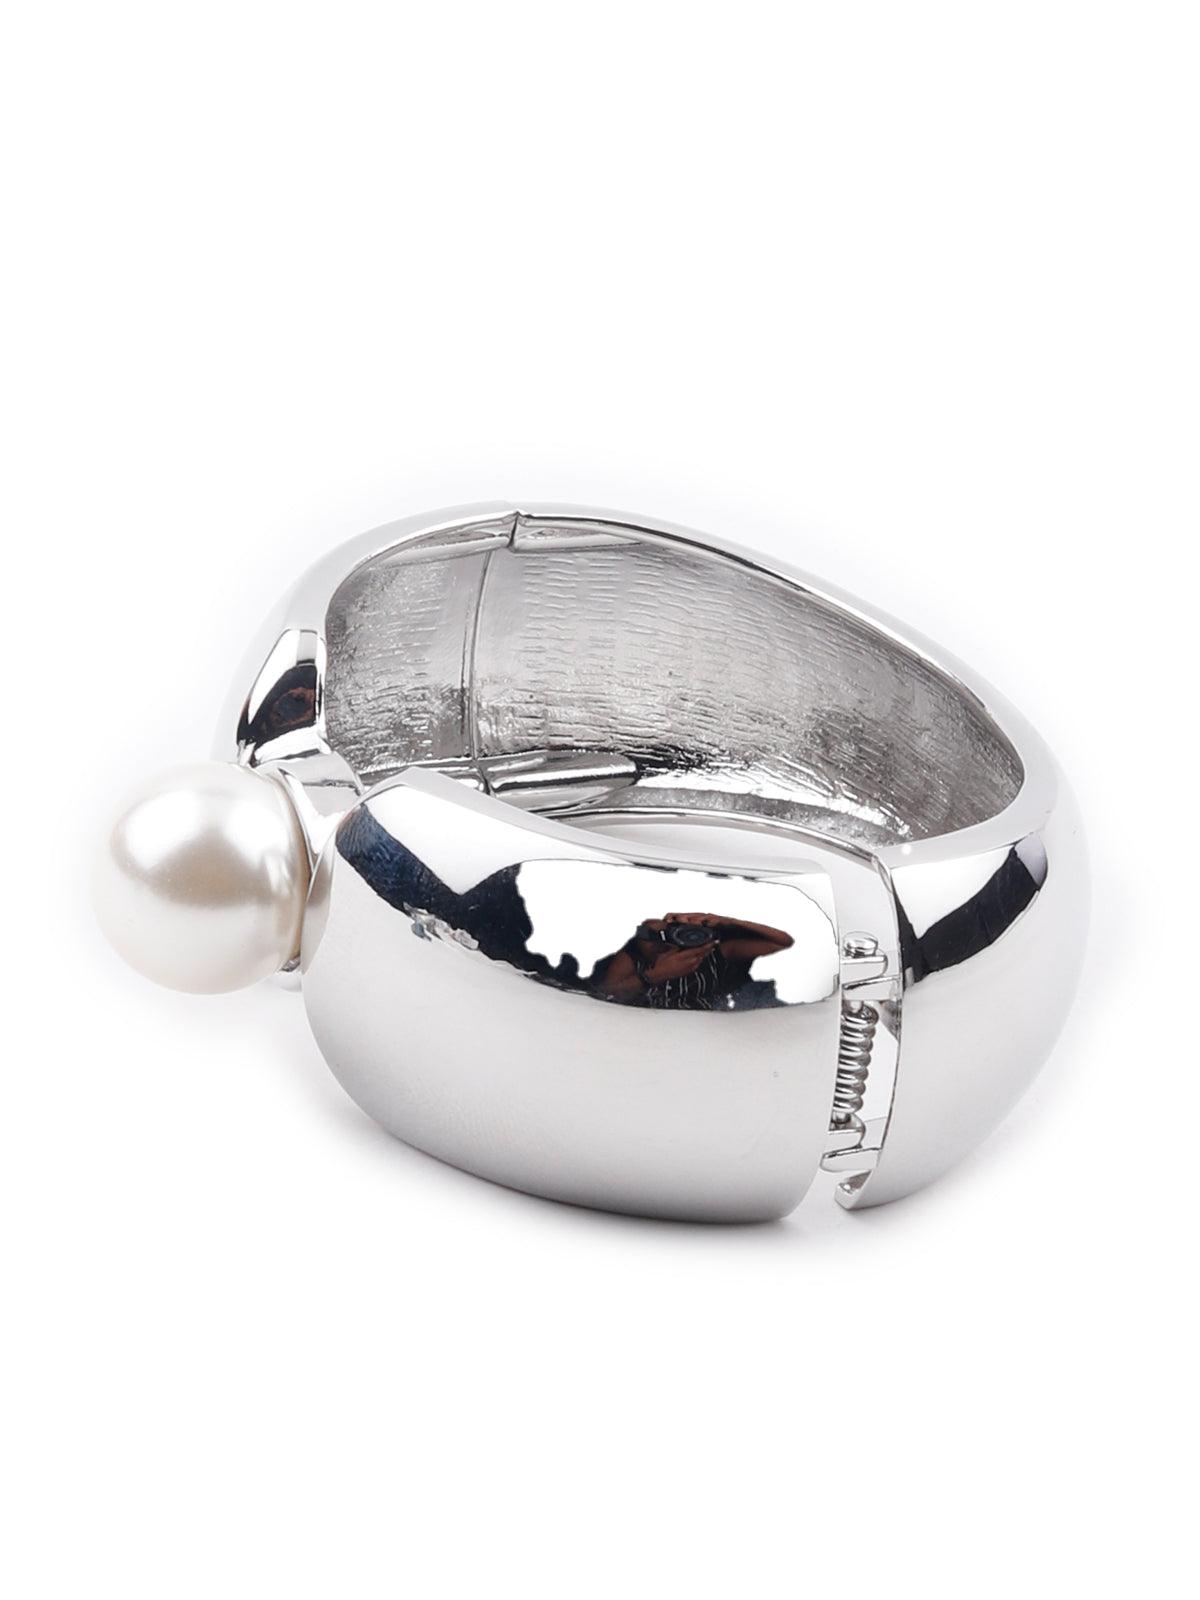 Silver modern art inspired bracelet - Odette